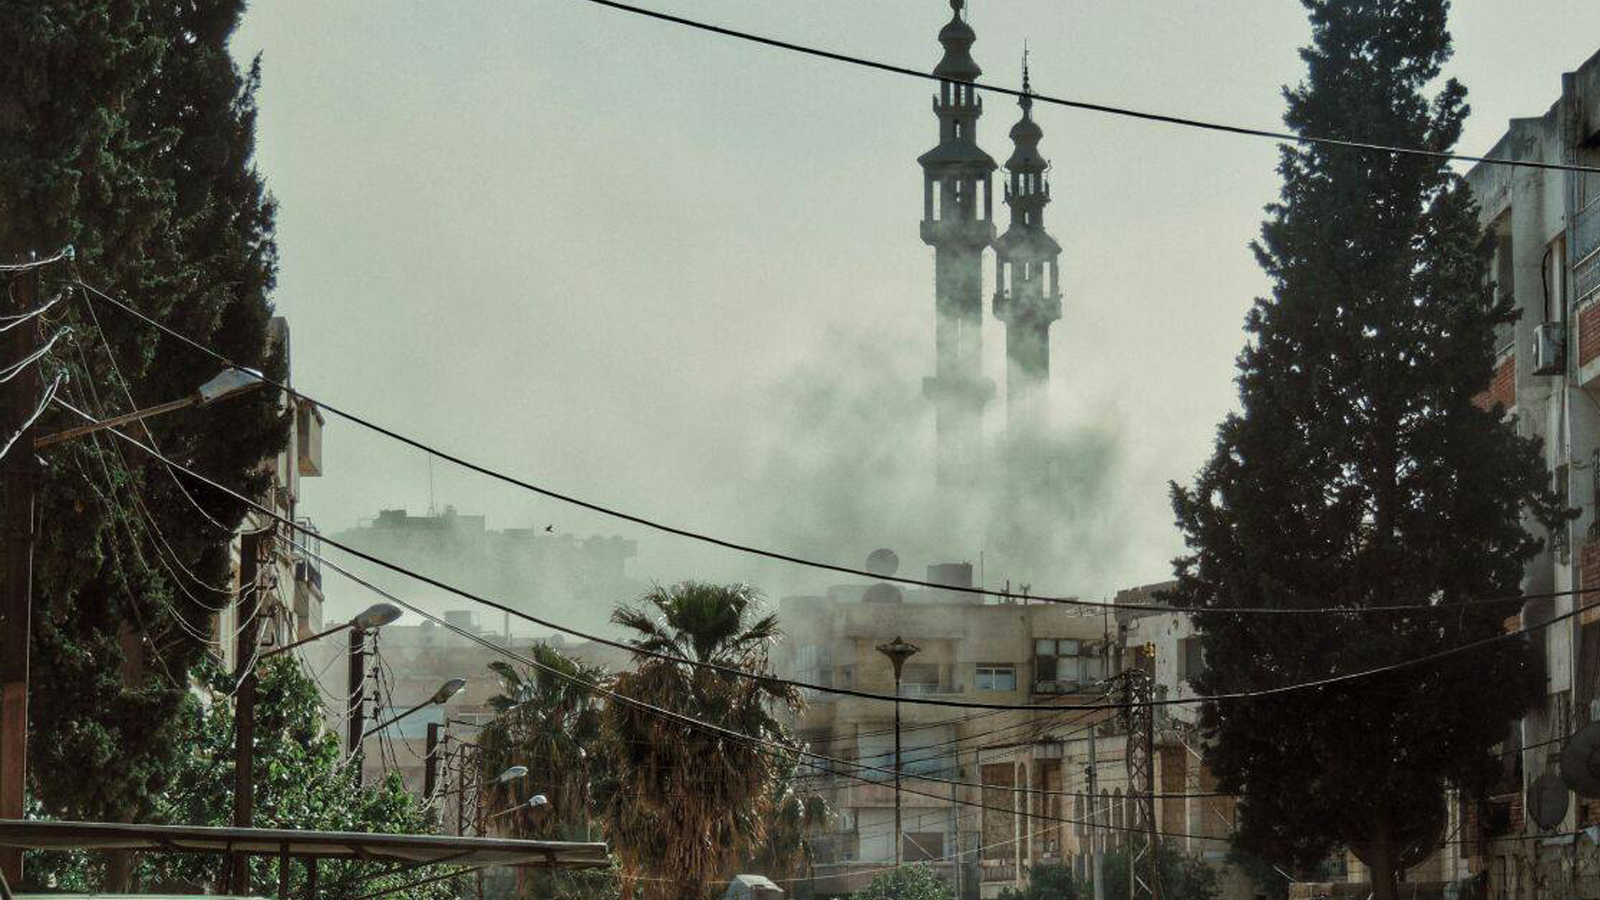 حمص في عين النار من جديد